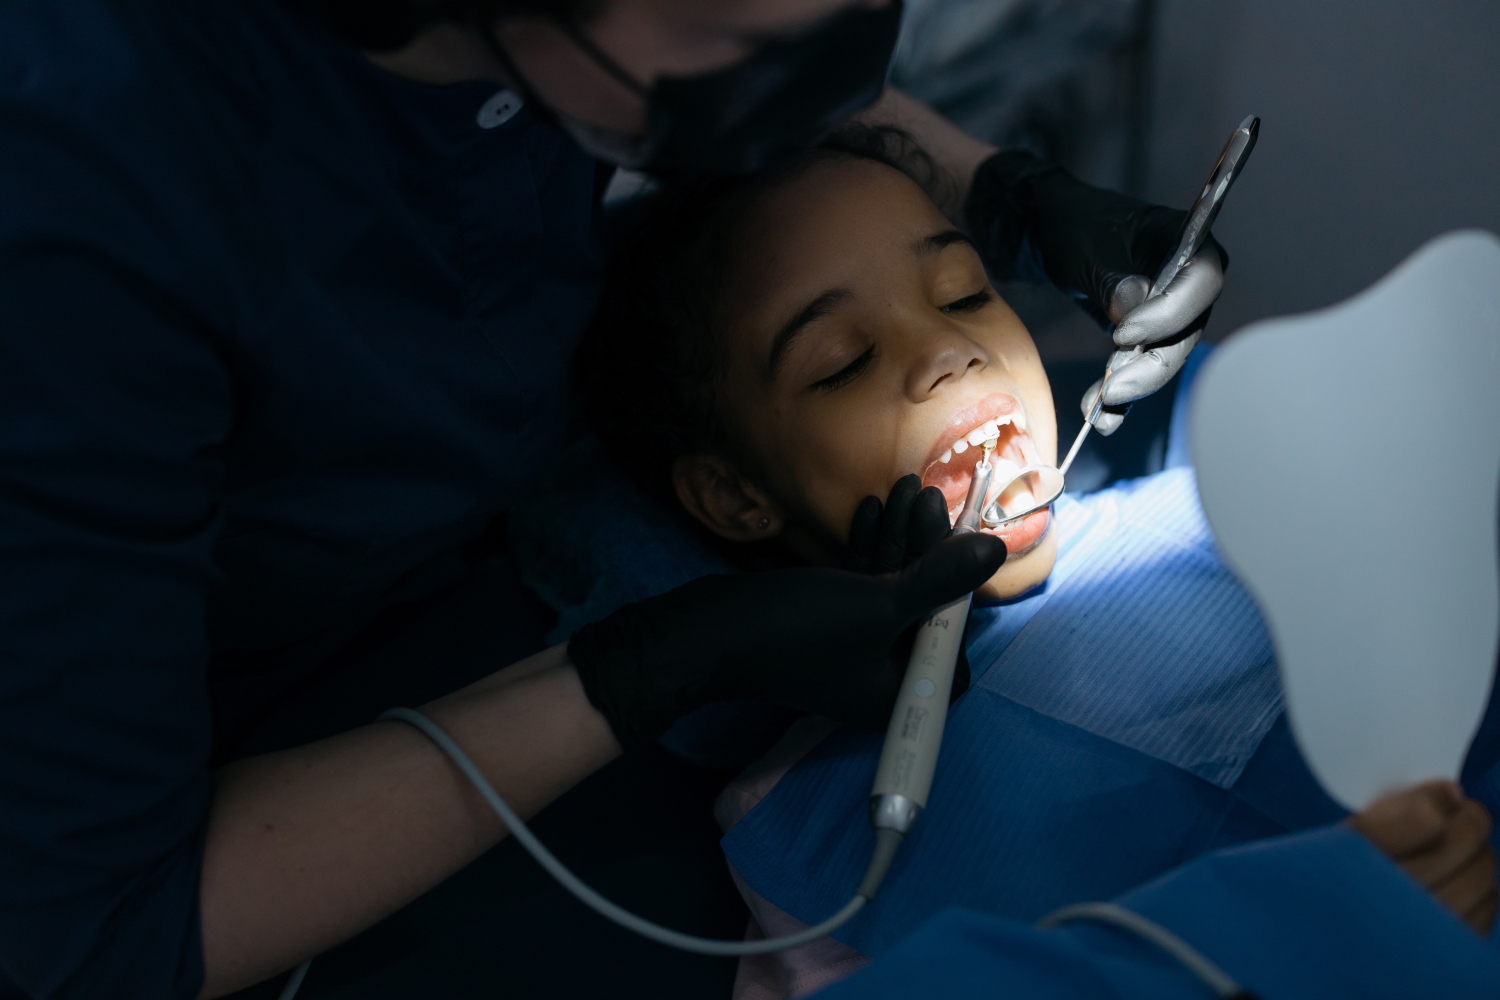 devojcica predskolskog uzrasta na pregledu kod stomatologa